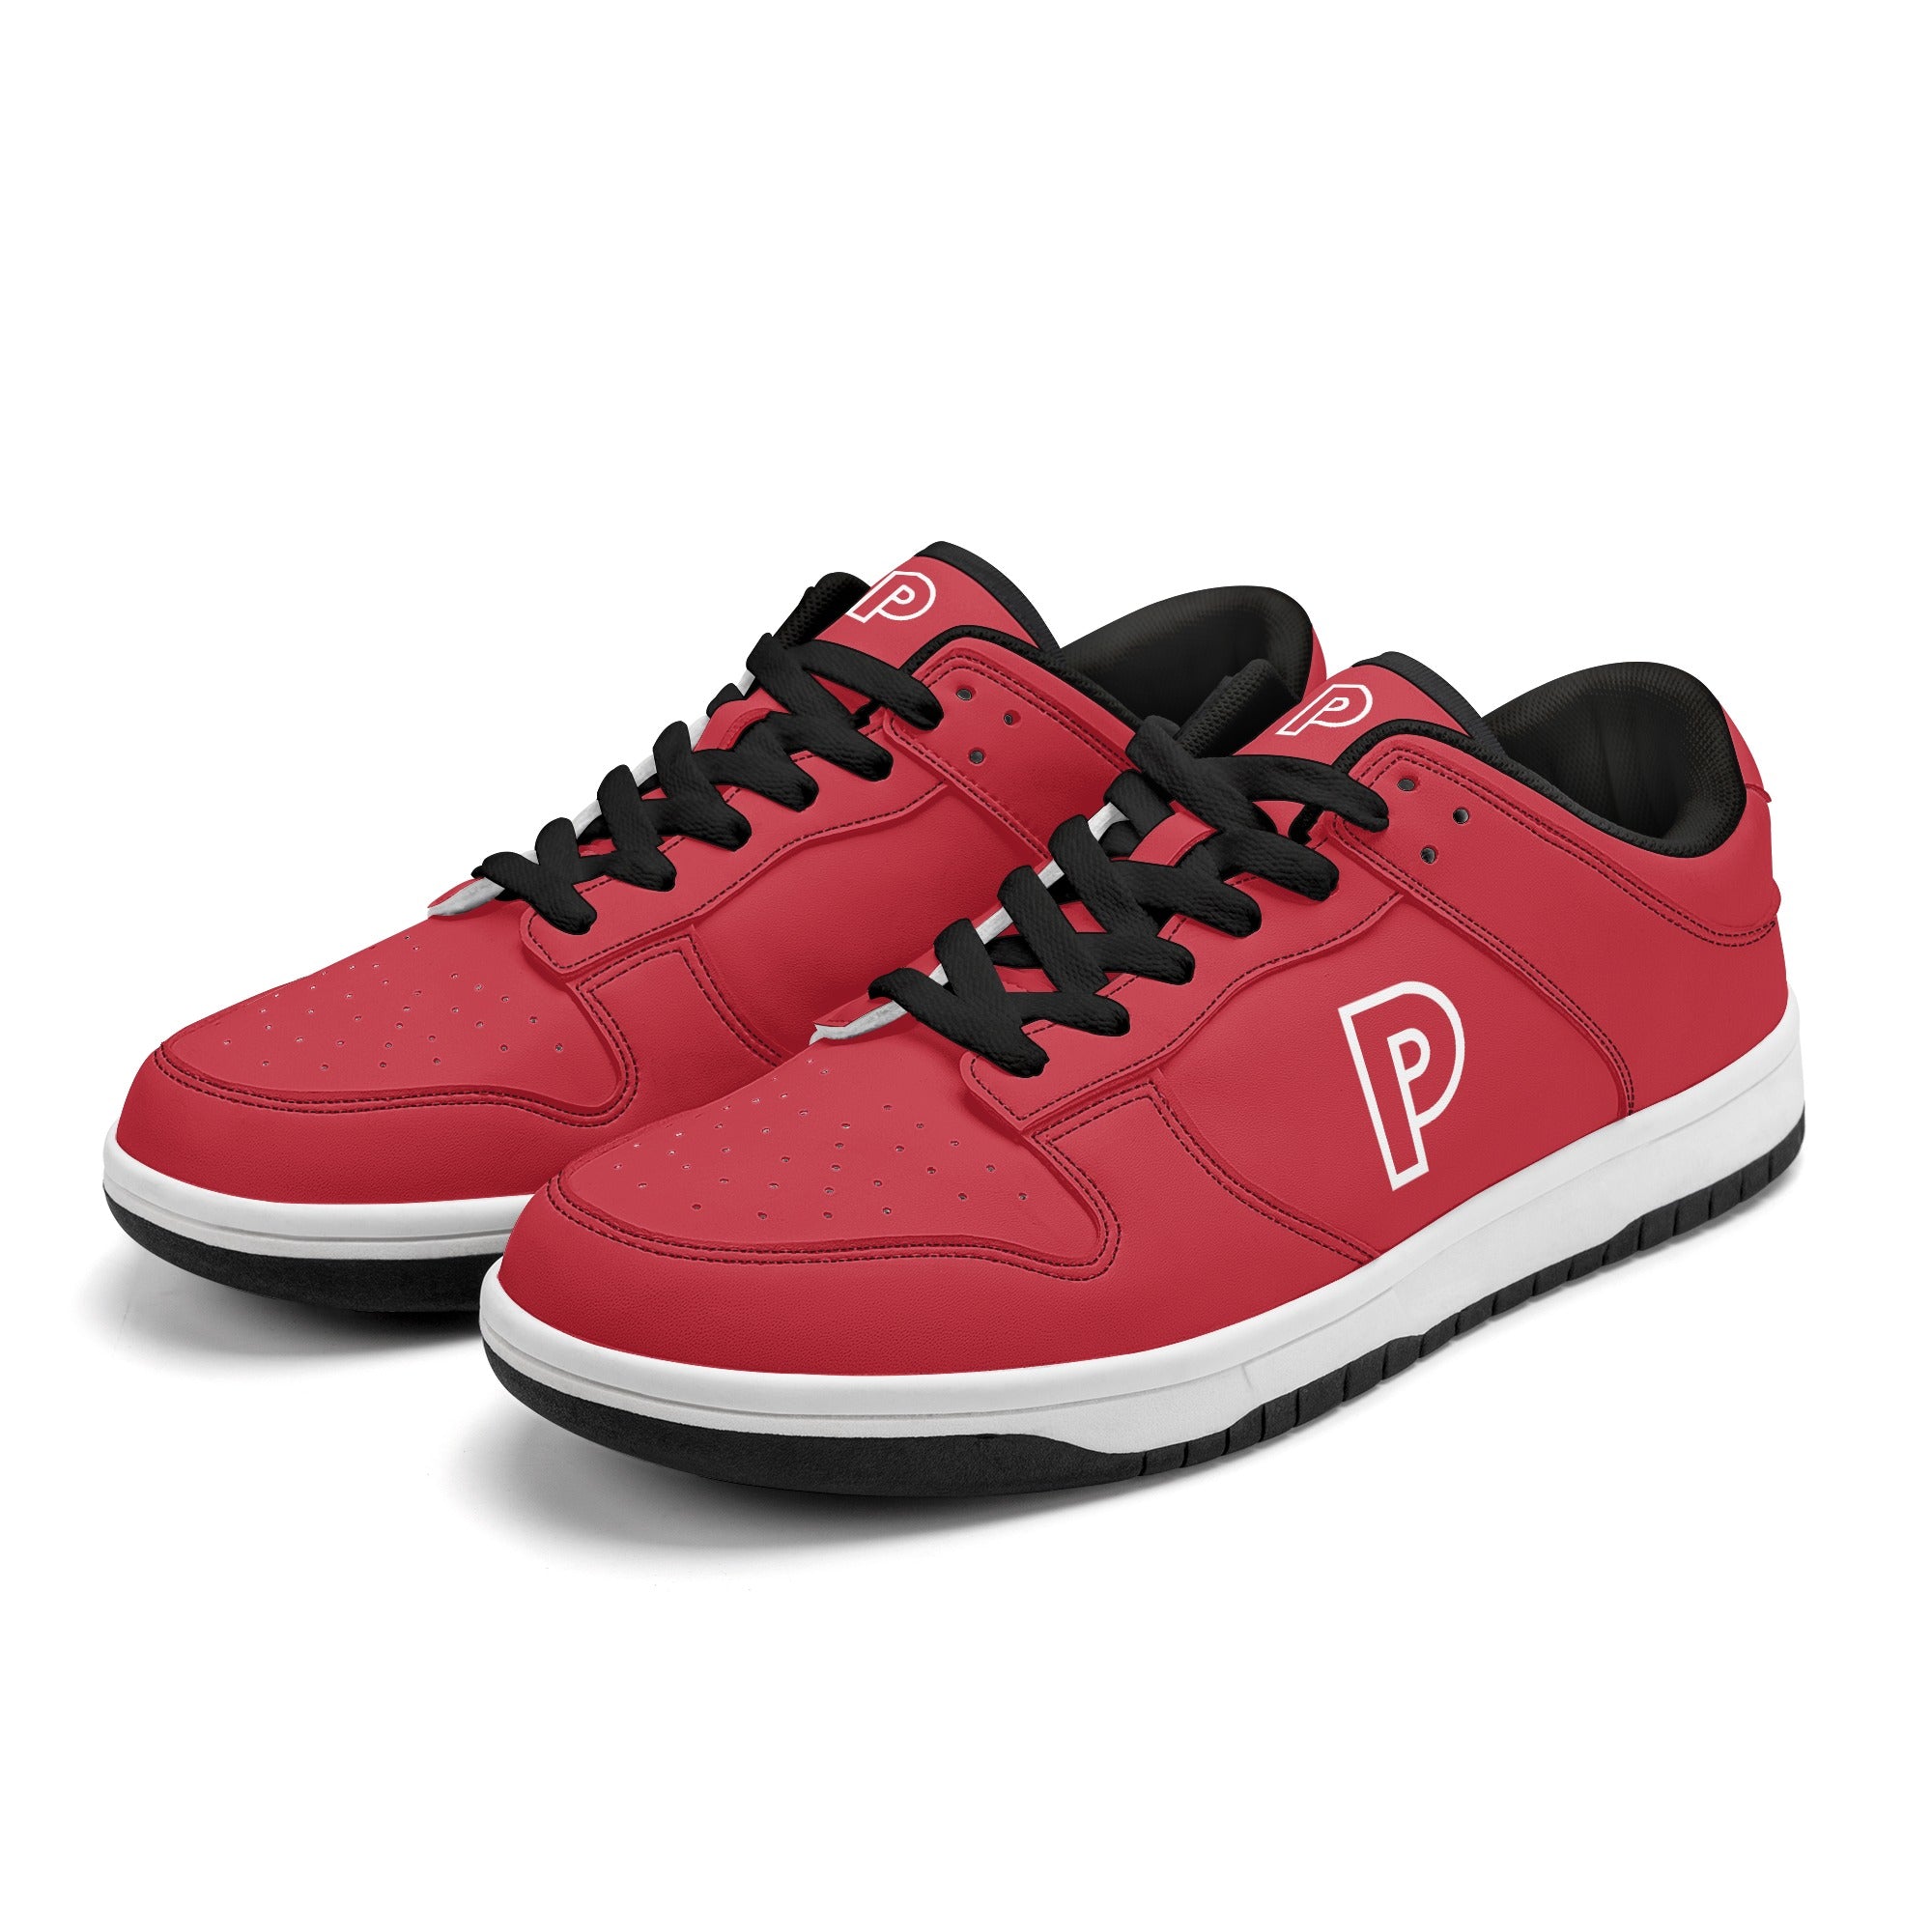 Power Promotions V2 | Custom Branded Sneakers | Shoe Zero